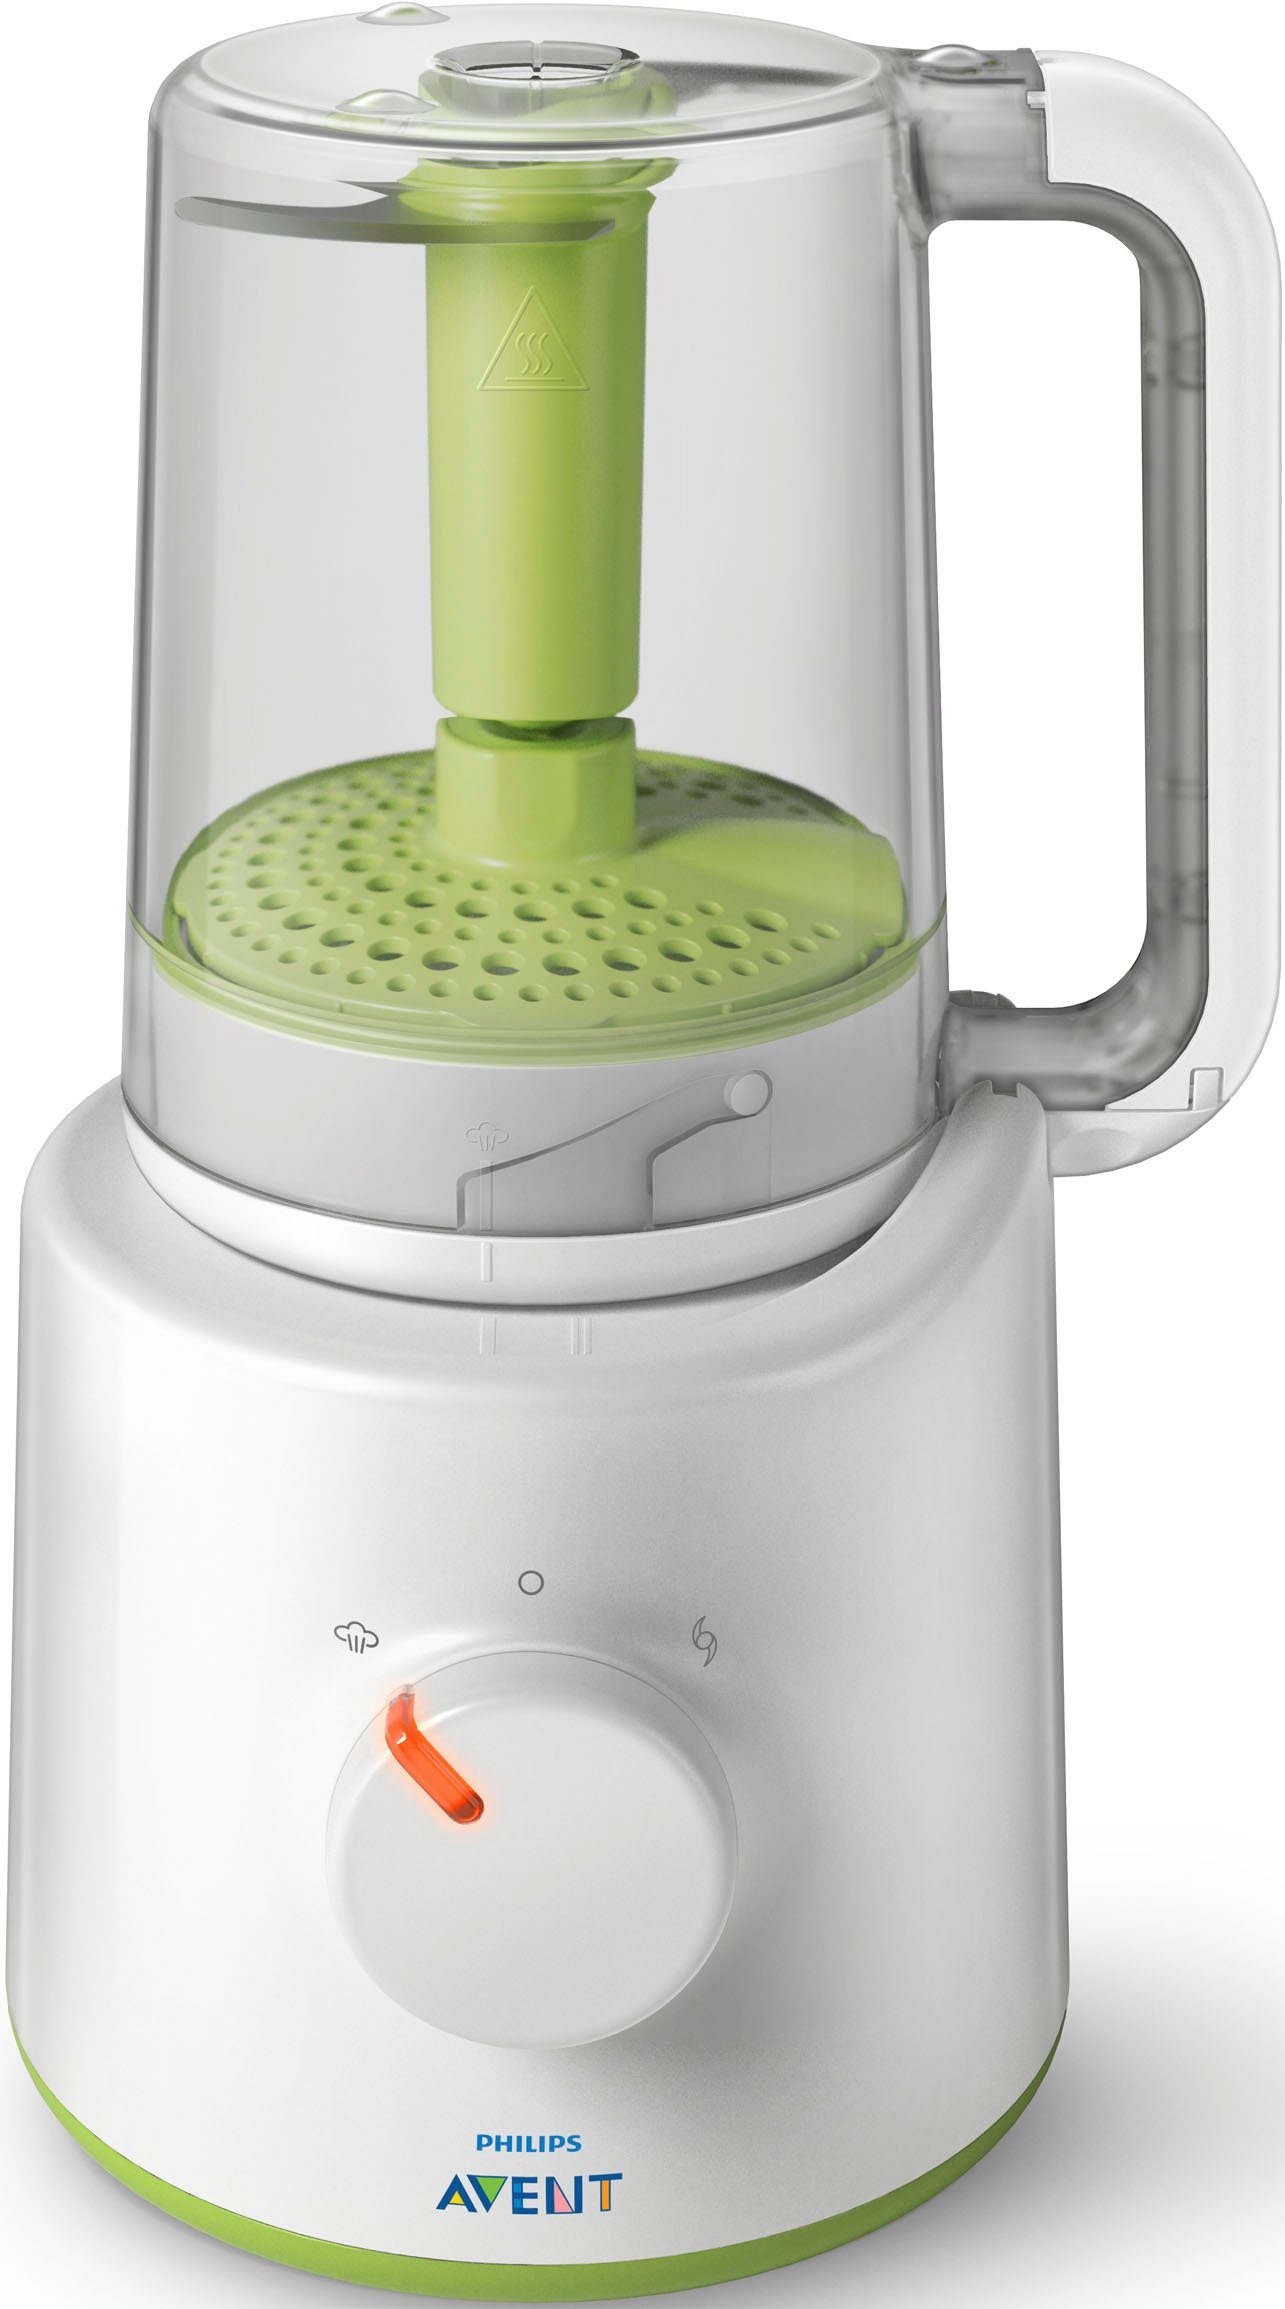 Philips AVENT Babynahrungszubereiter SCF870/20, 400 W, 2-in-1, Dampfgaren und Mixen, mit 12 altersgerechten Rezepten | Handmixer